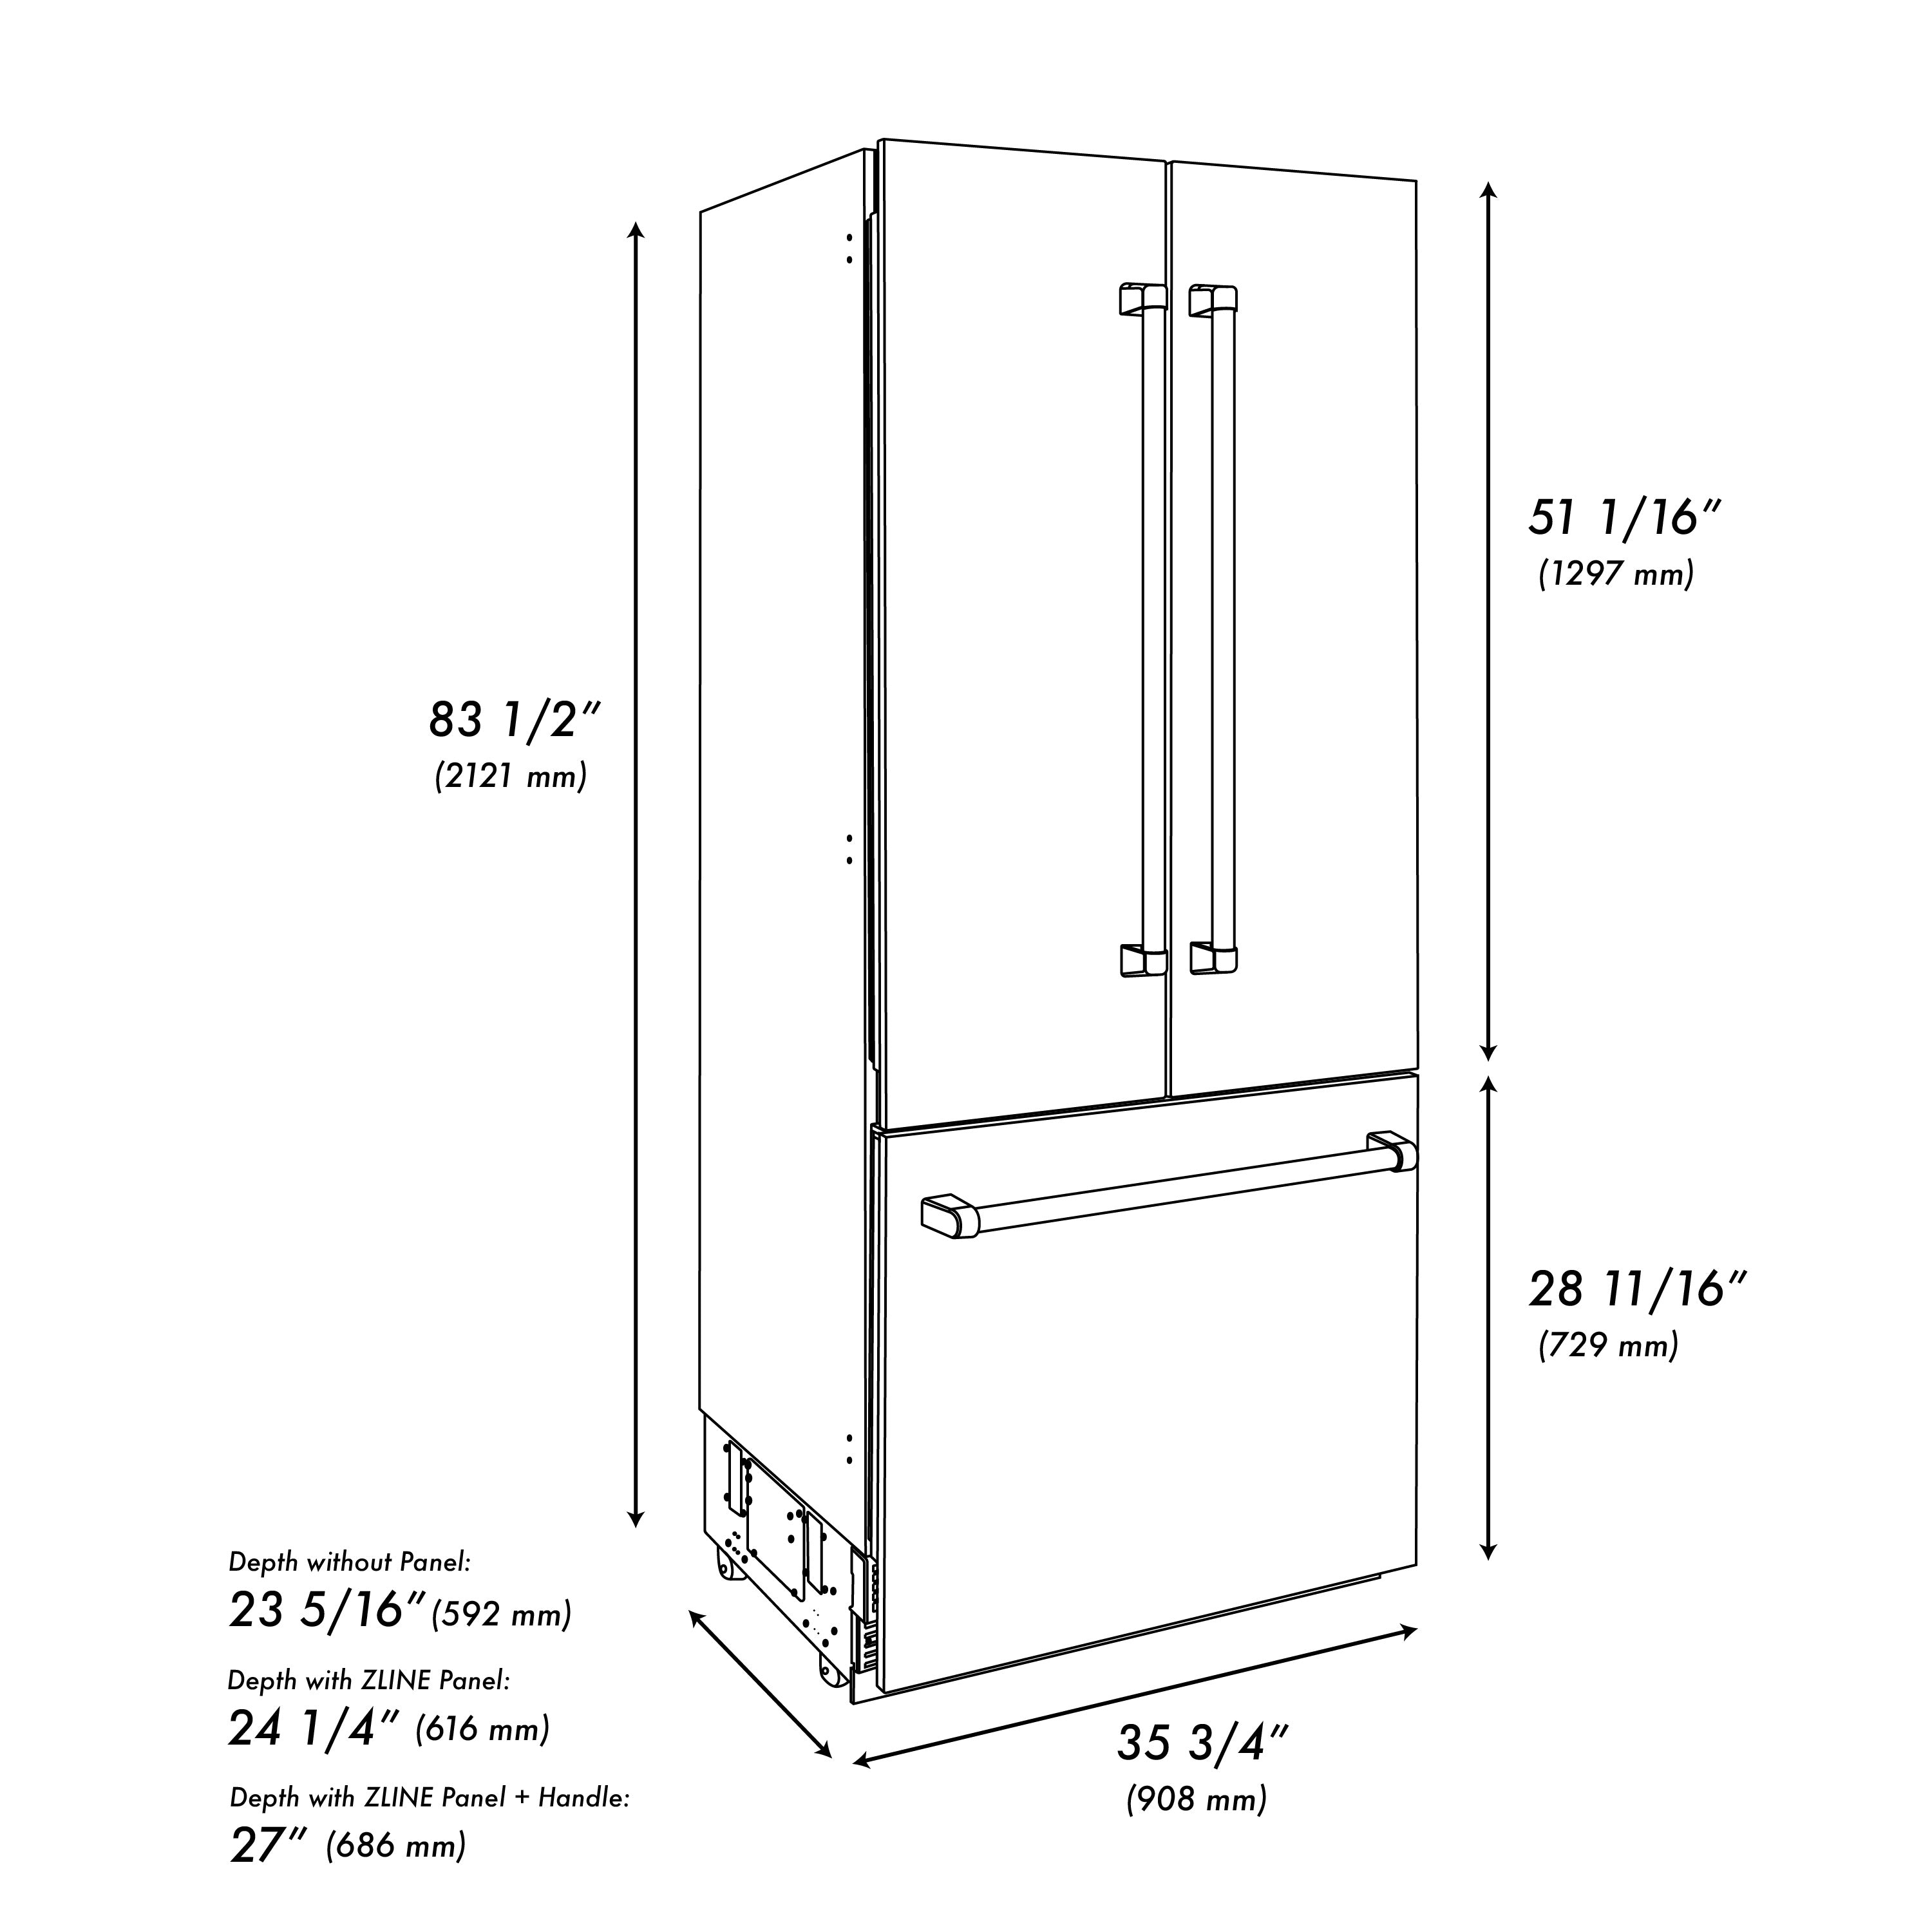 ZLINE 36" 19.6 cu. ft. Built-In 3-Door French Door Refrigerator with Internal Water and Ice Dispenser in Stainless Steel